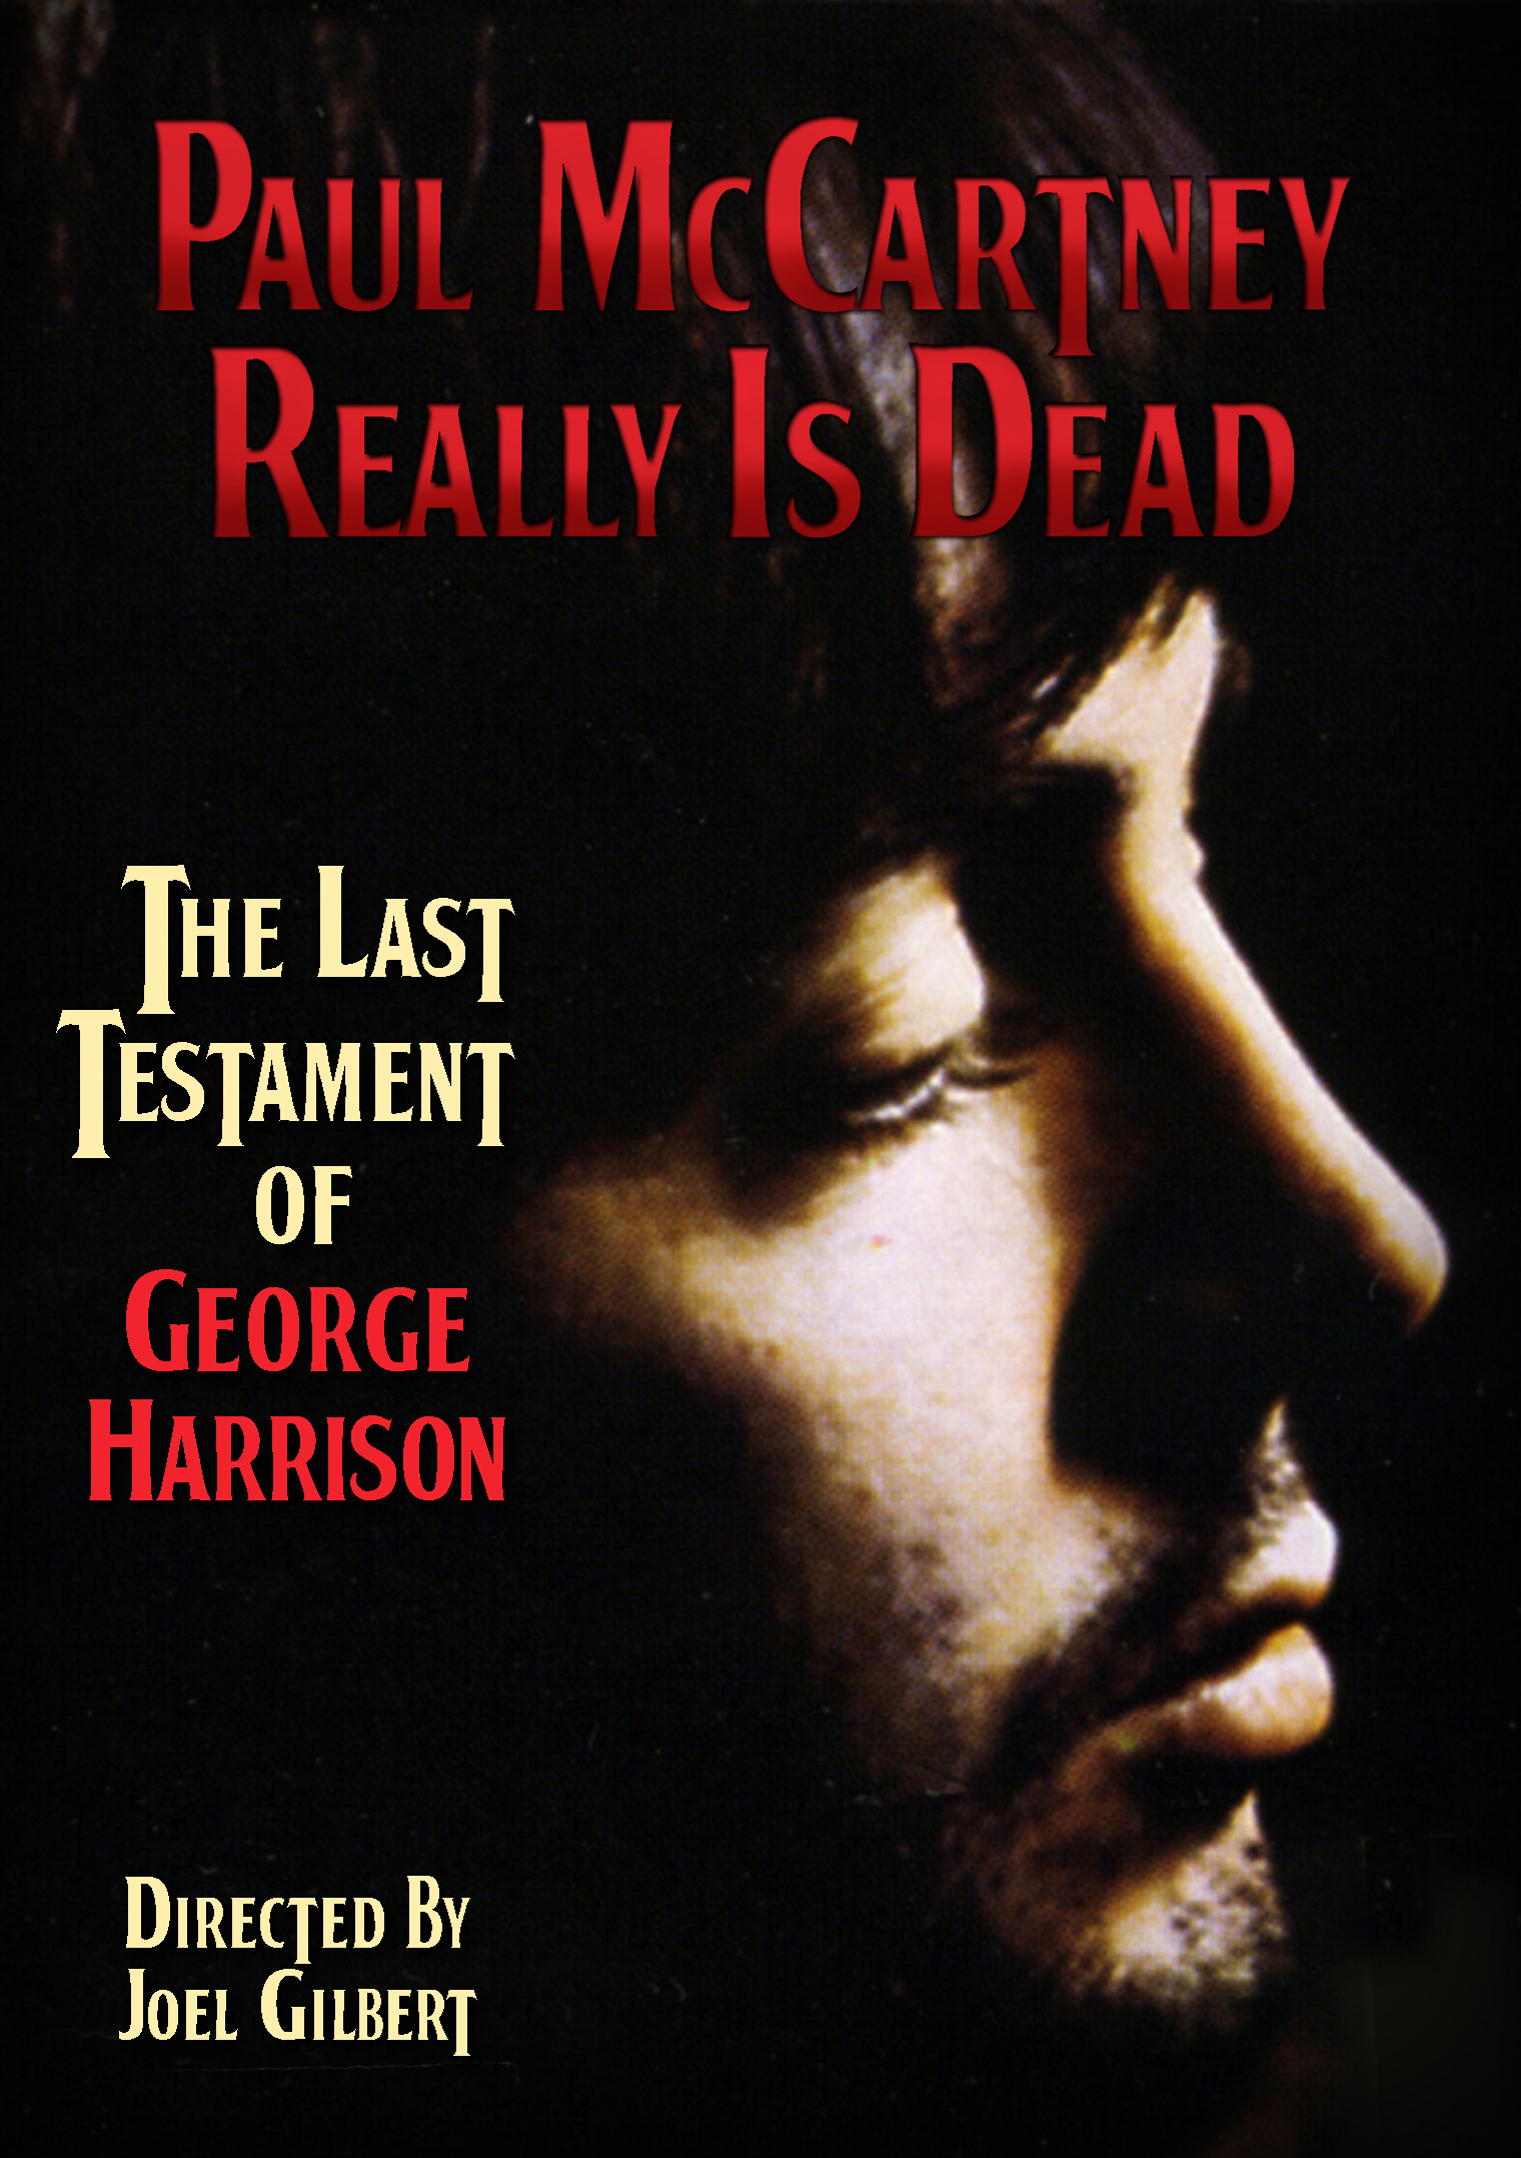 George Harrison Says Paul McCartney’s Dead In New DVD